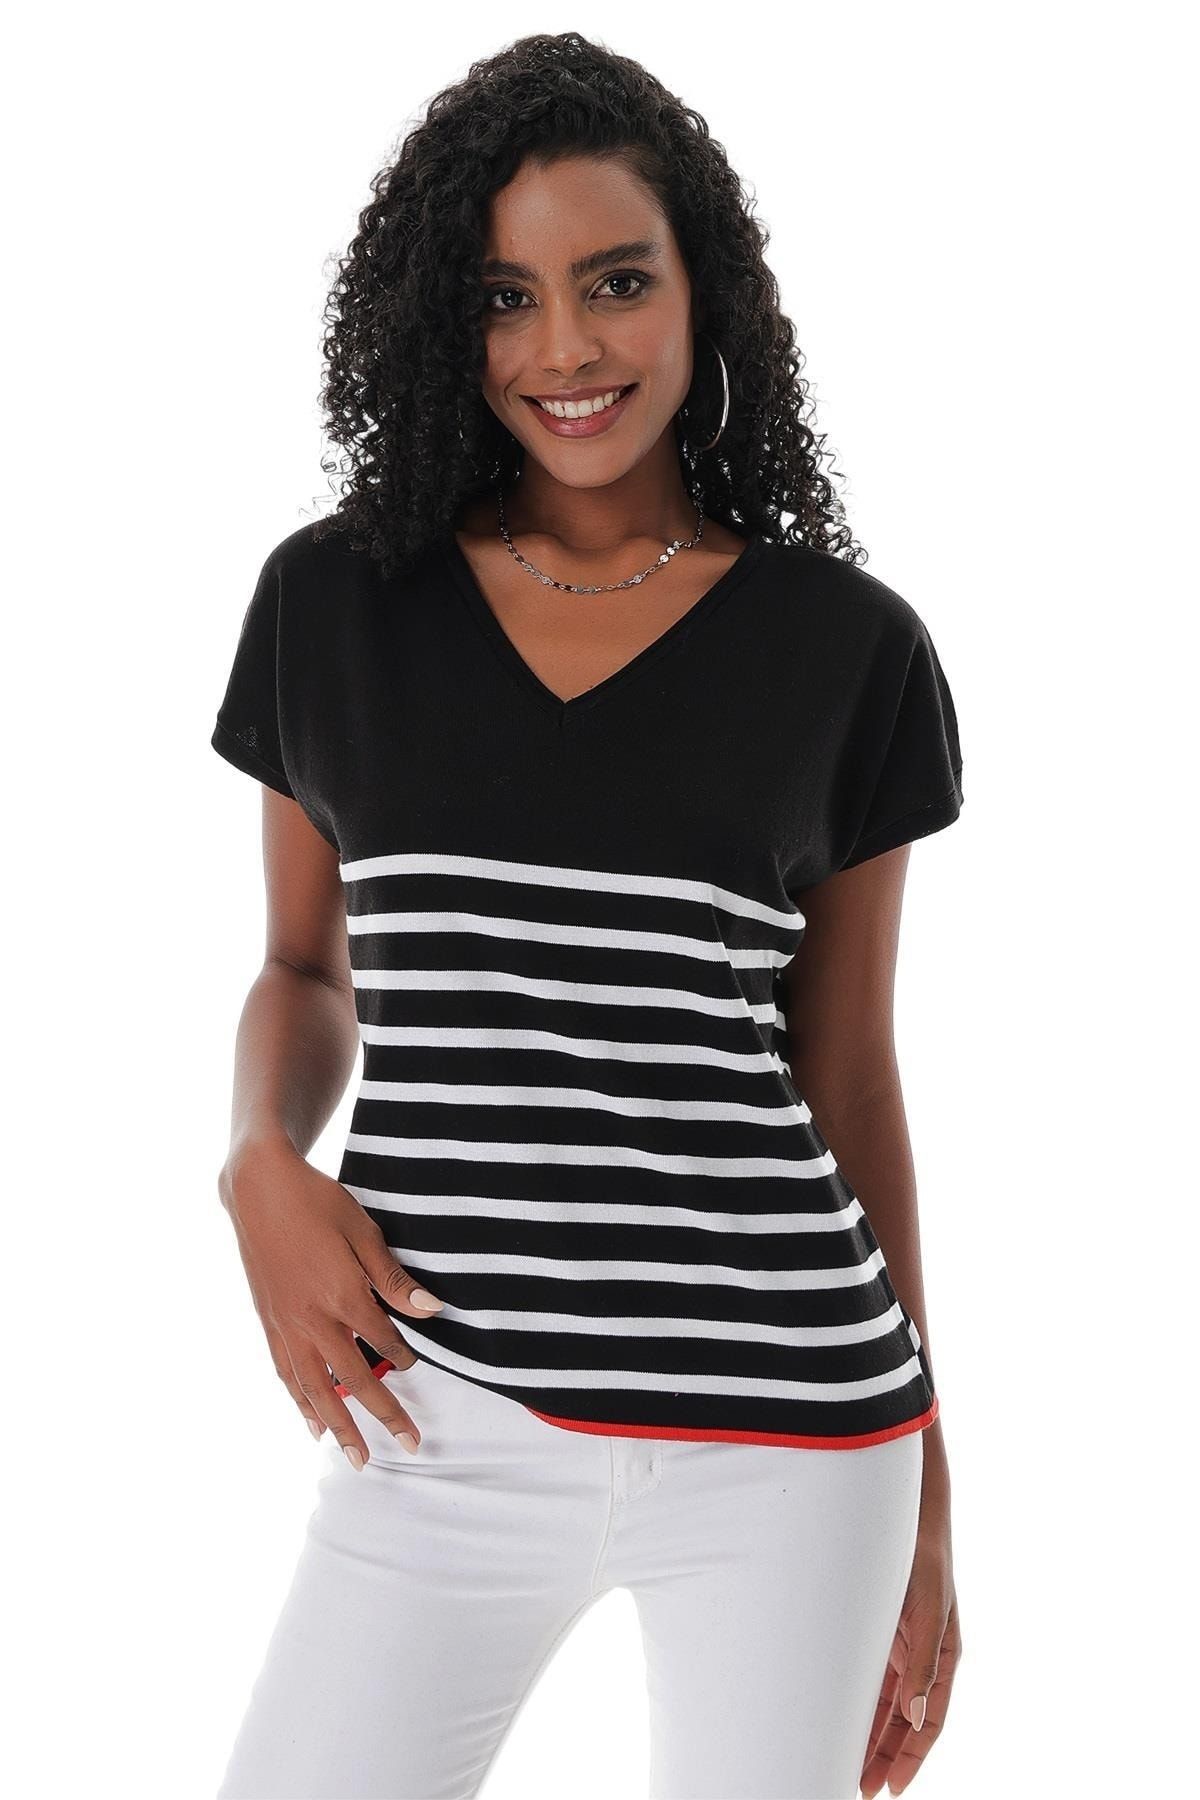 CHUBA Kadın V Yaka Çizgili Rahat Form Marin Kısa Kollu Ince Triko T-shirt Siyah-beyaz 23s1009